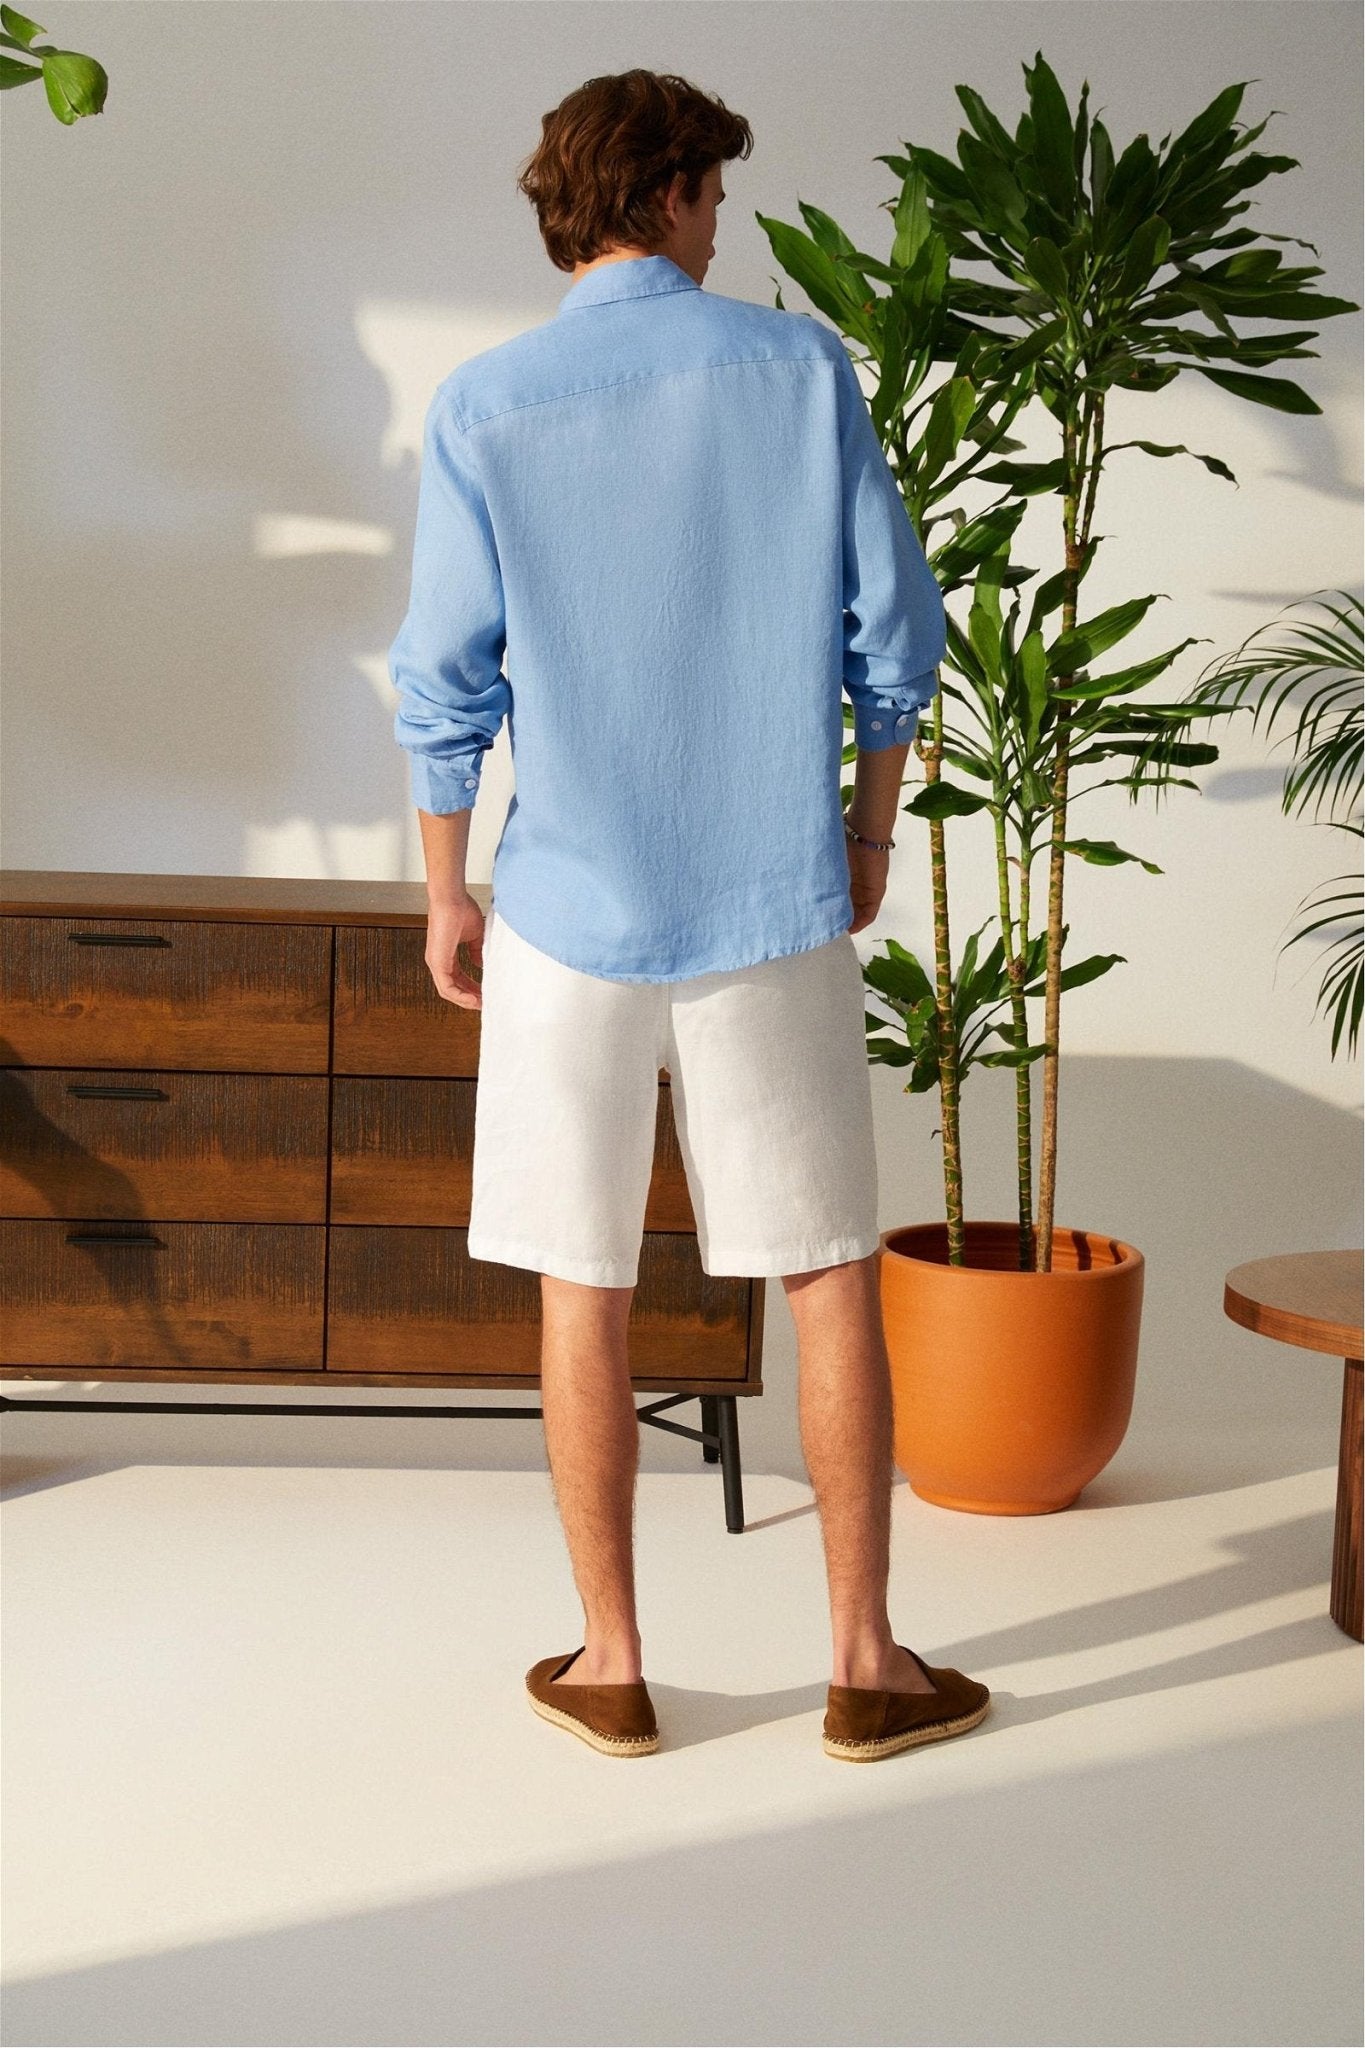 Classic Fit Linen Blue Long Sleeve Shirt Shirt 99percenthandmade   